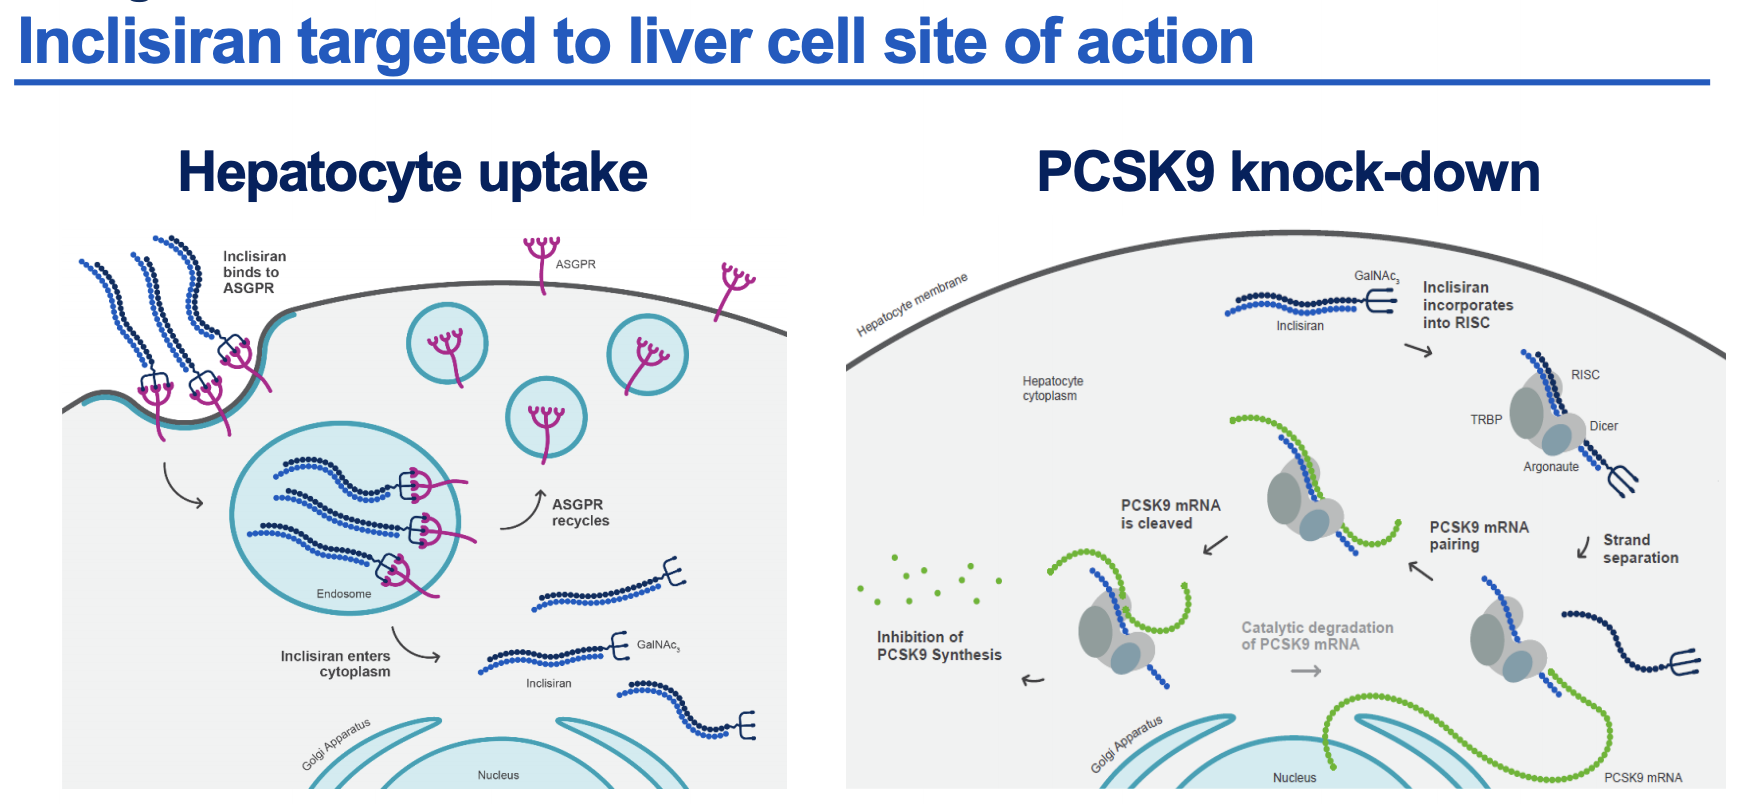 无论年龄和性别，诺华靶向PCSK9的<font color="red">siRNA</font>疗法均可在17个月内持续有效降低LDL-C